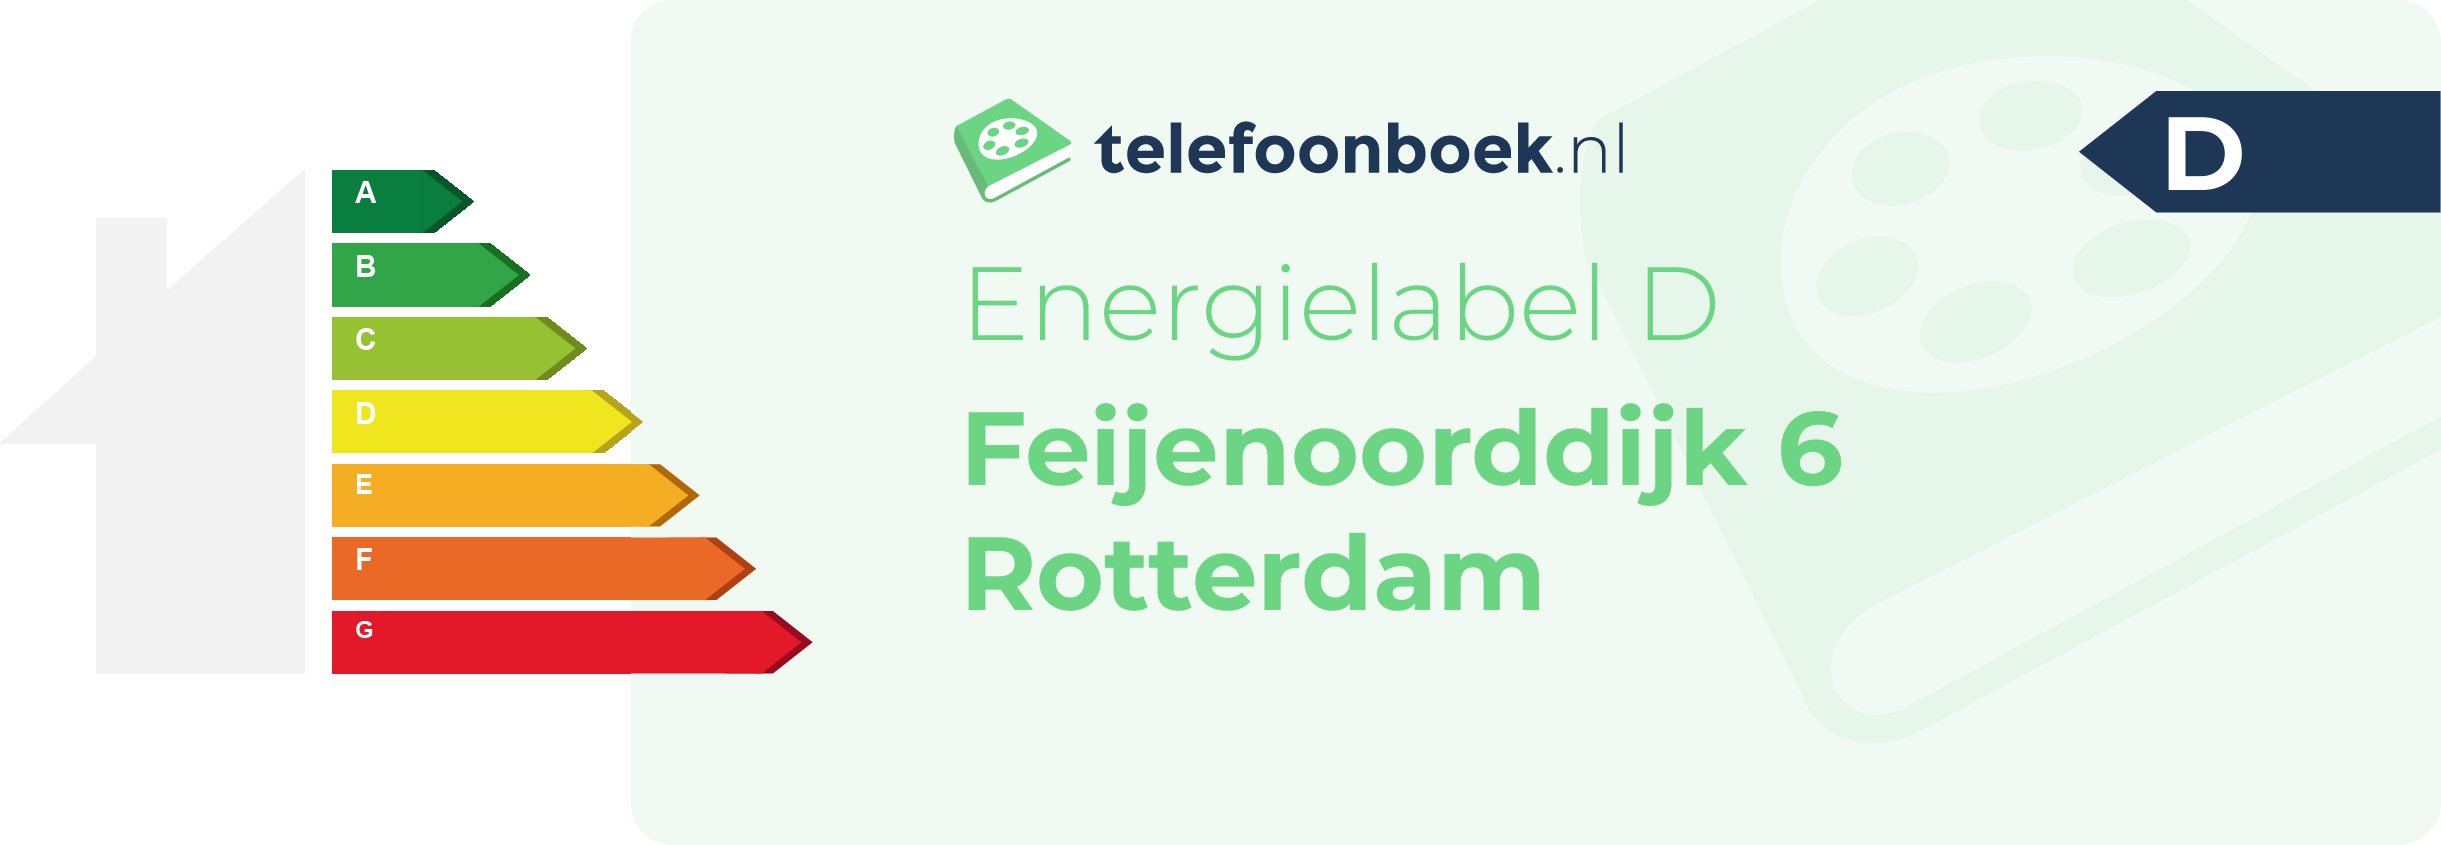 Energielabel Feijenoorddijk 6 Rotterdam